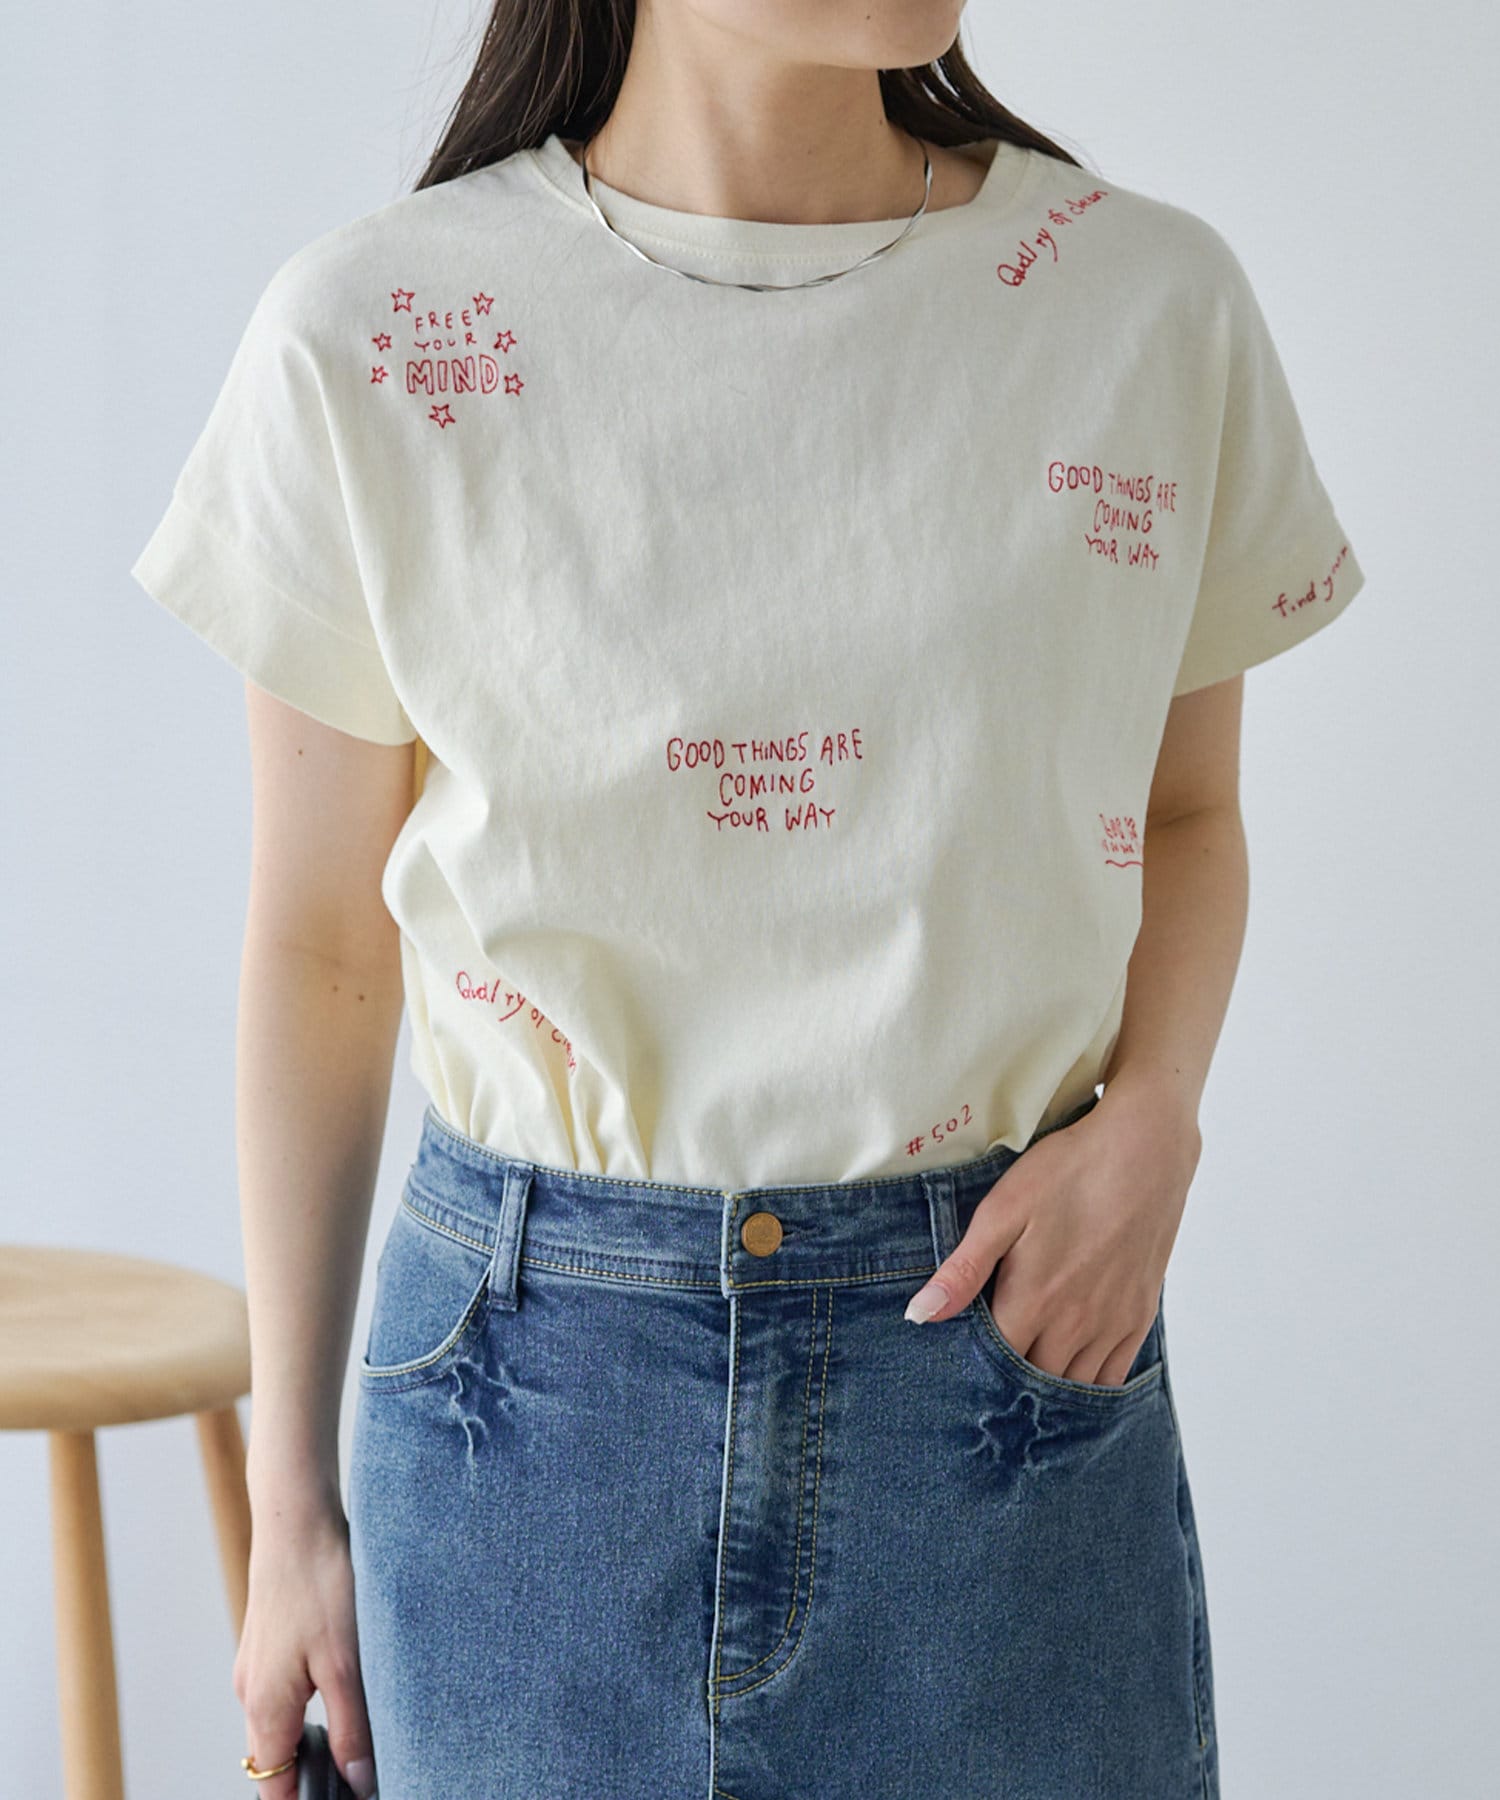 PUAL CE CIN(ピュアルセシン) 手書き風ロゴ刺繍Tシャツ